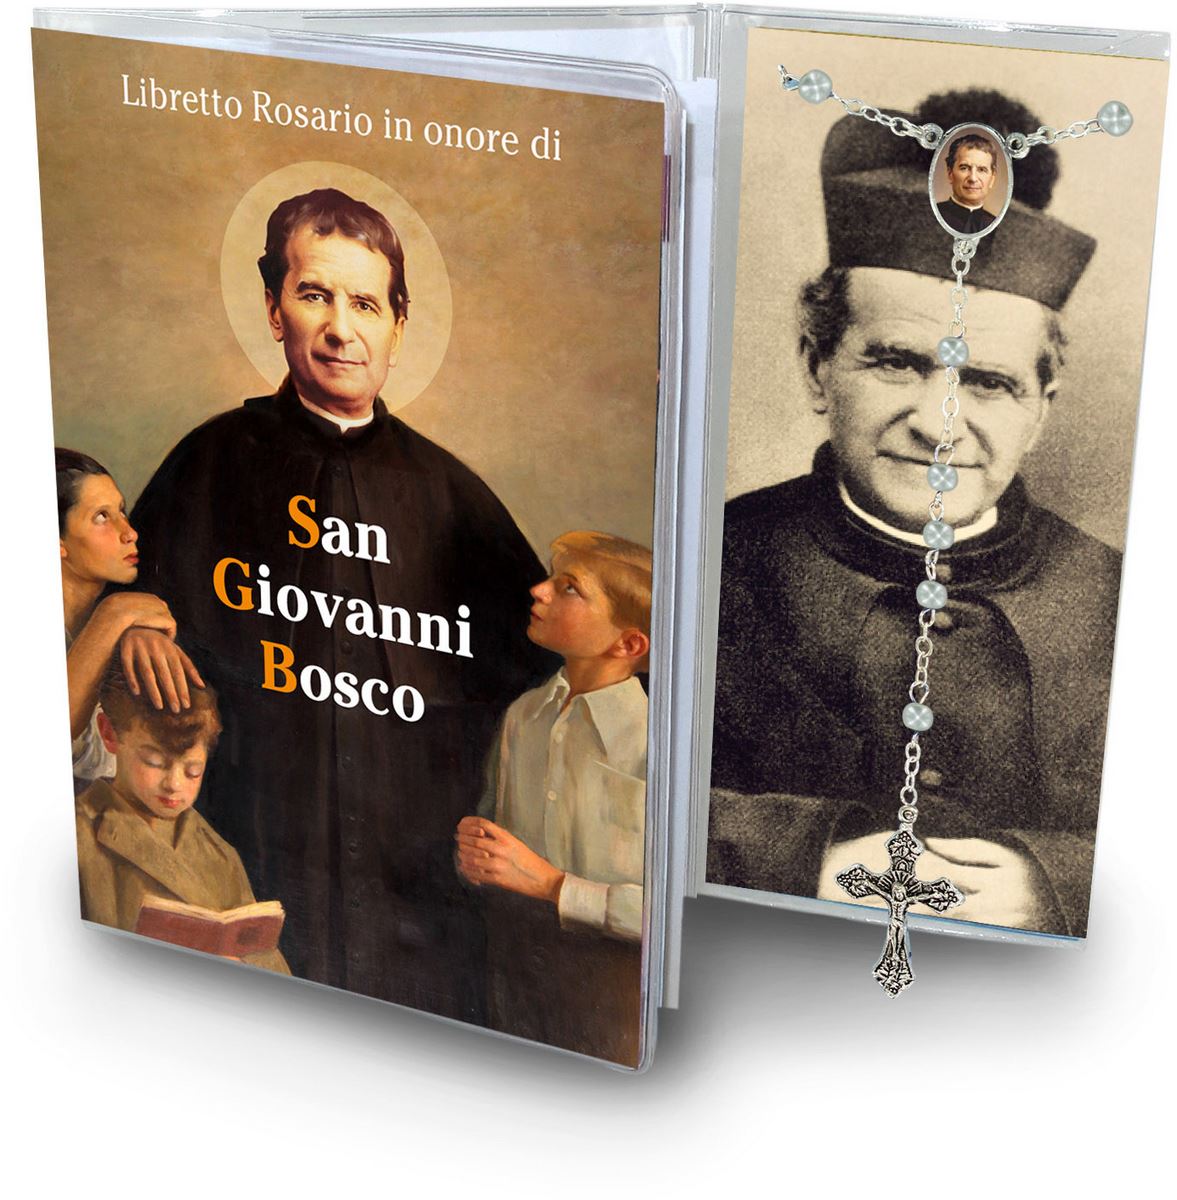 libretto con rosario san giovanni bosco - italiano